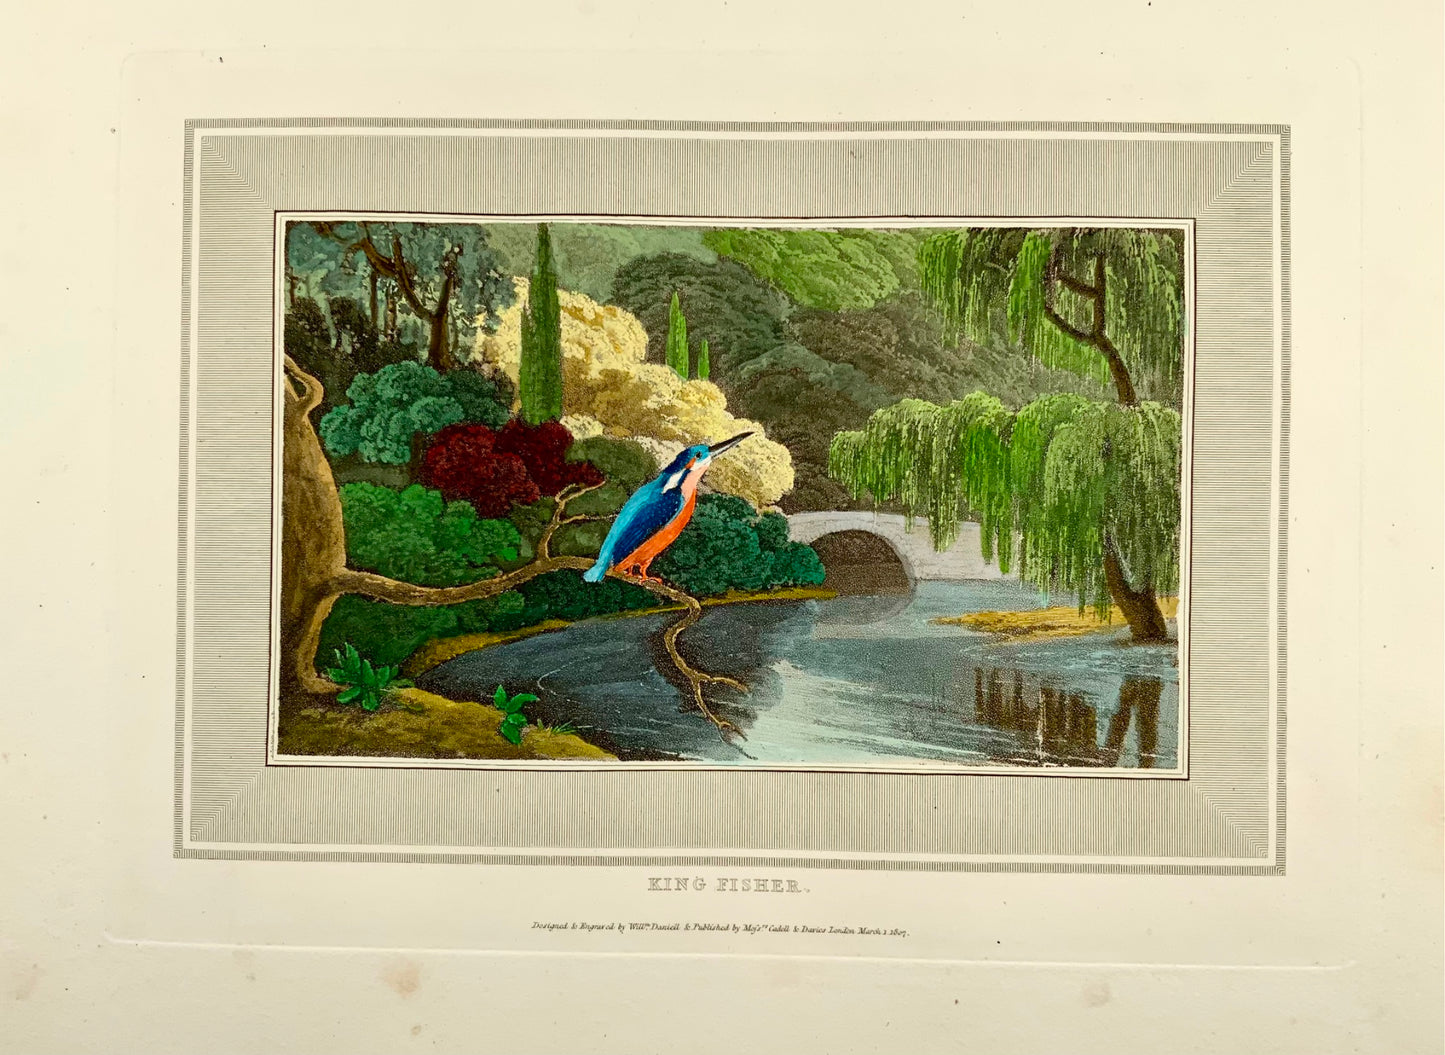 1807 William Daniell, Martin-pêcheur, ornithologie, aquatinte coloriée à la main